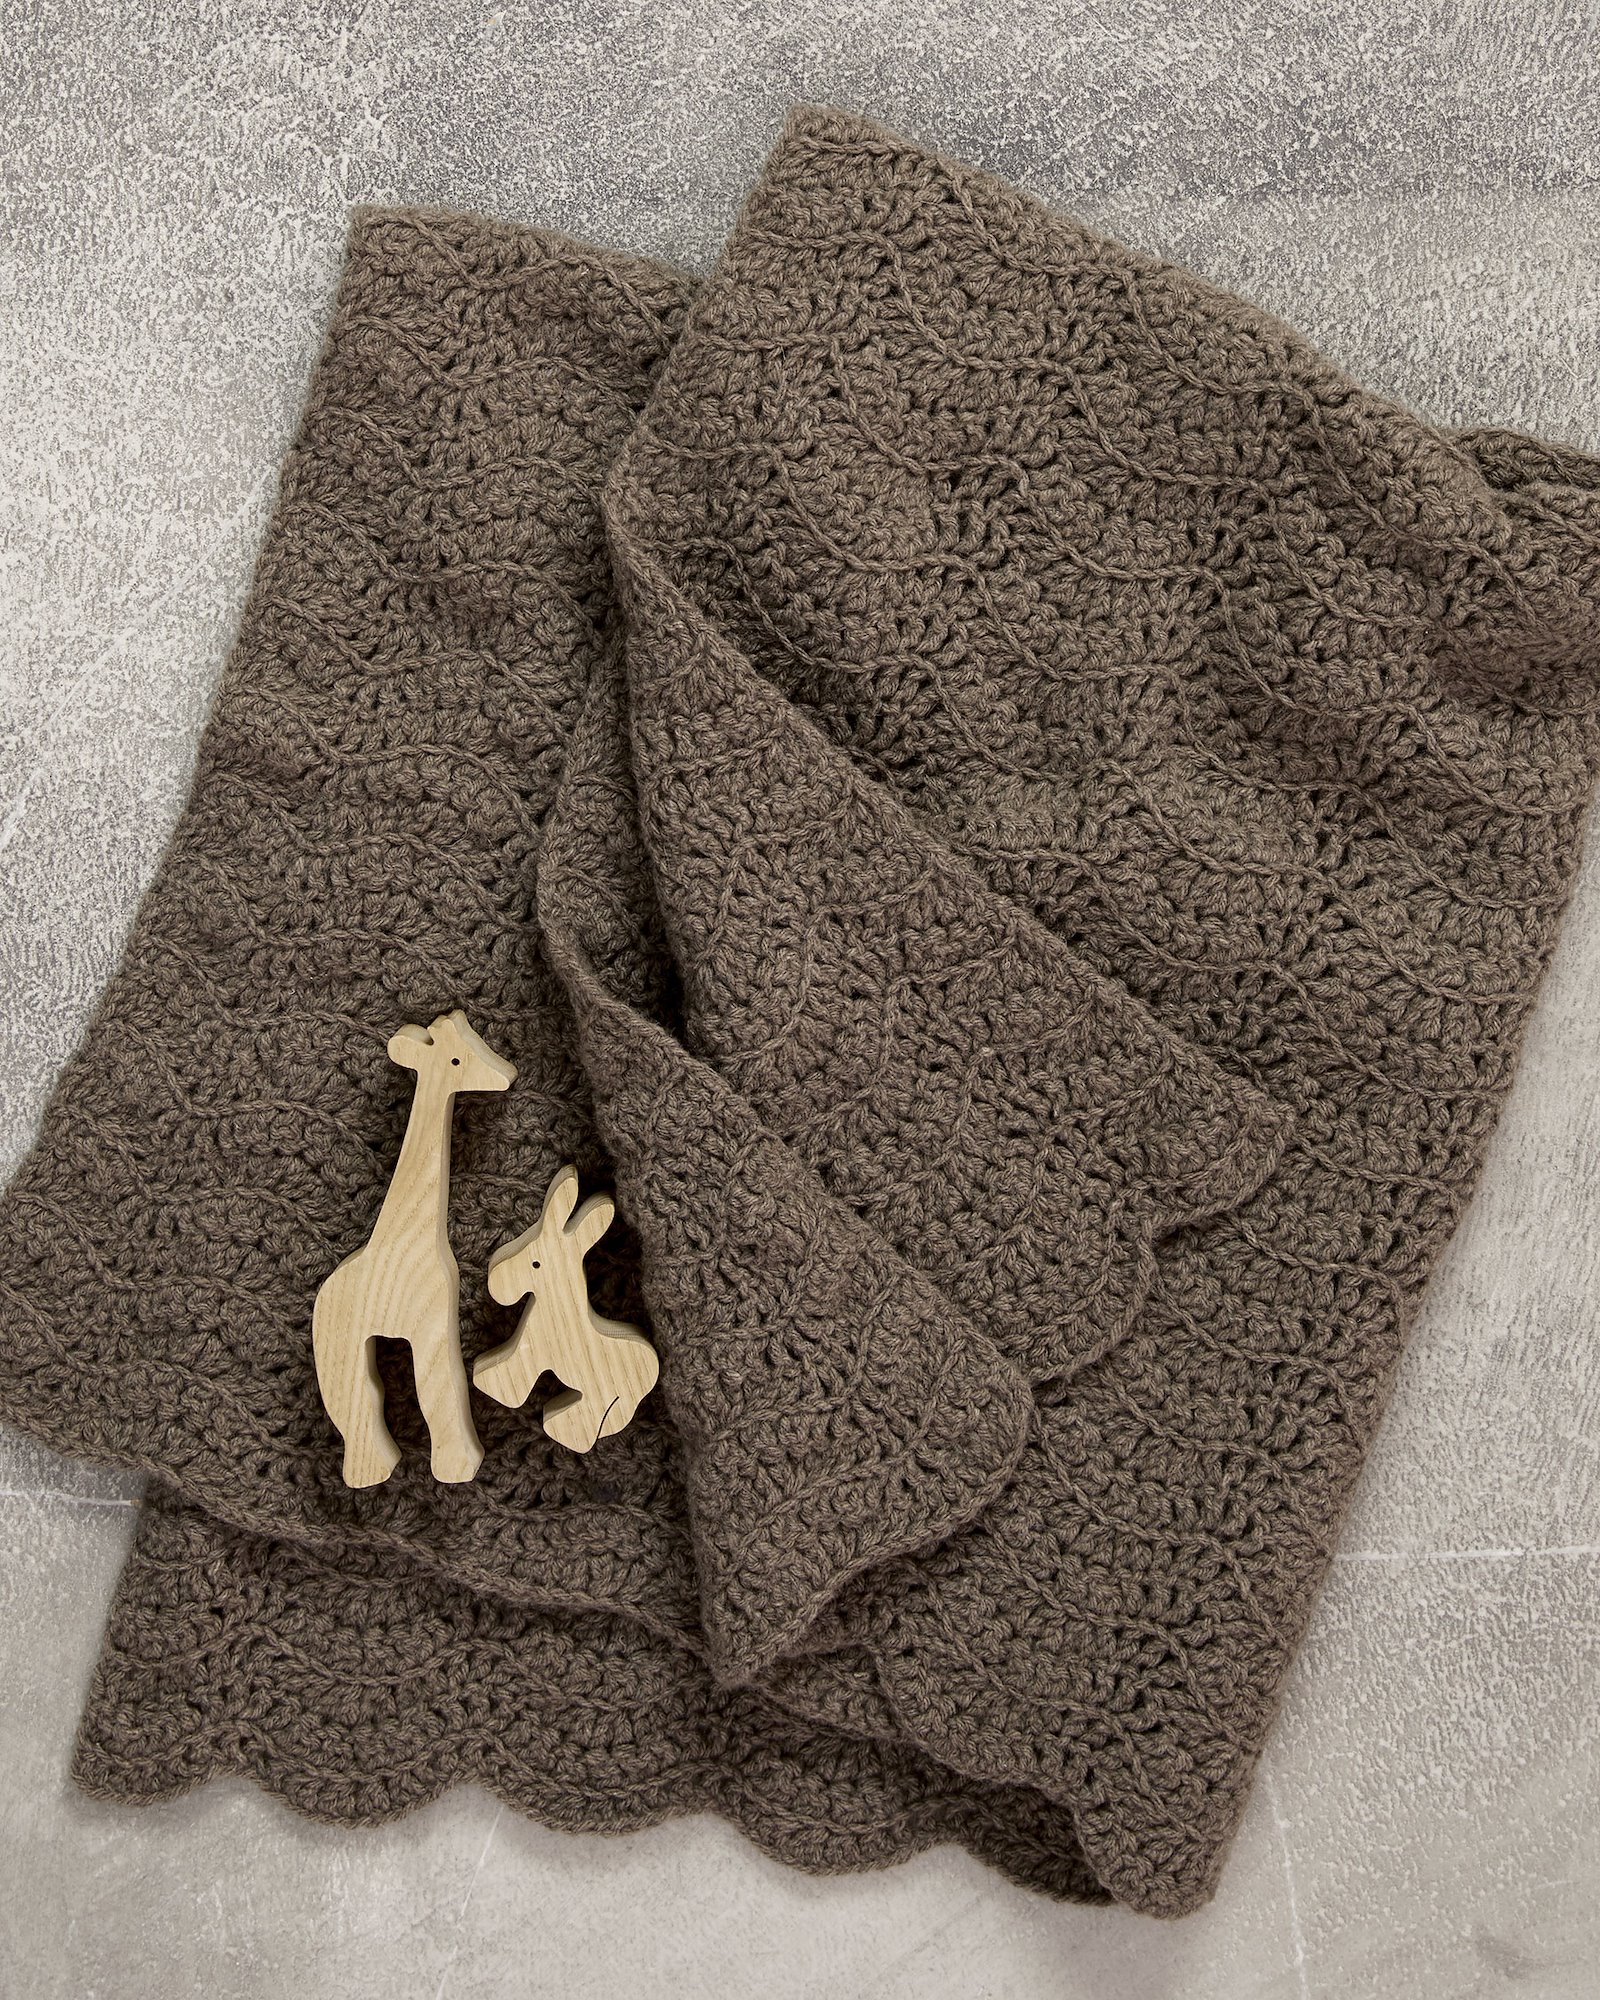 FRAYA crochet pattern - Snuggle up blanket, home & decoration - caring version FRAYA9032_image_inriver.jpg